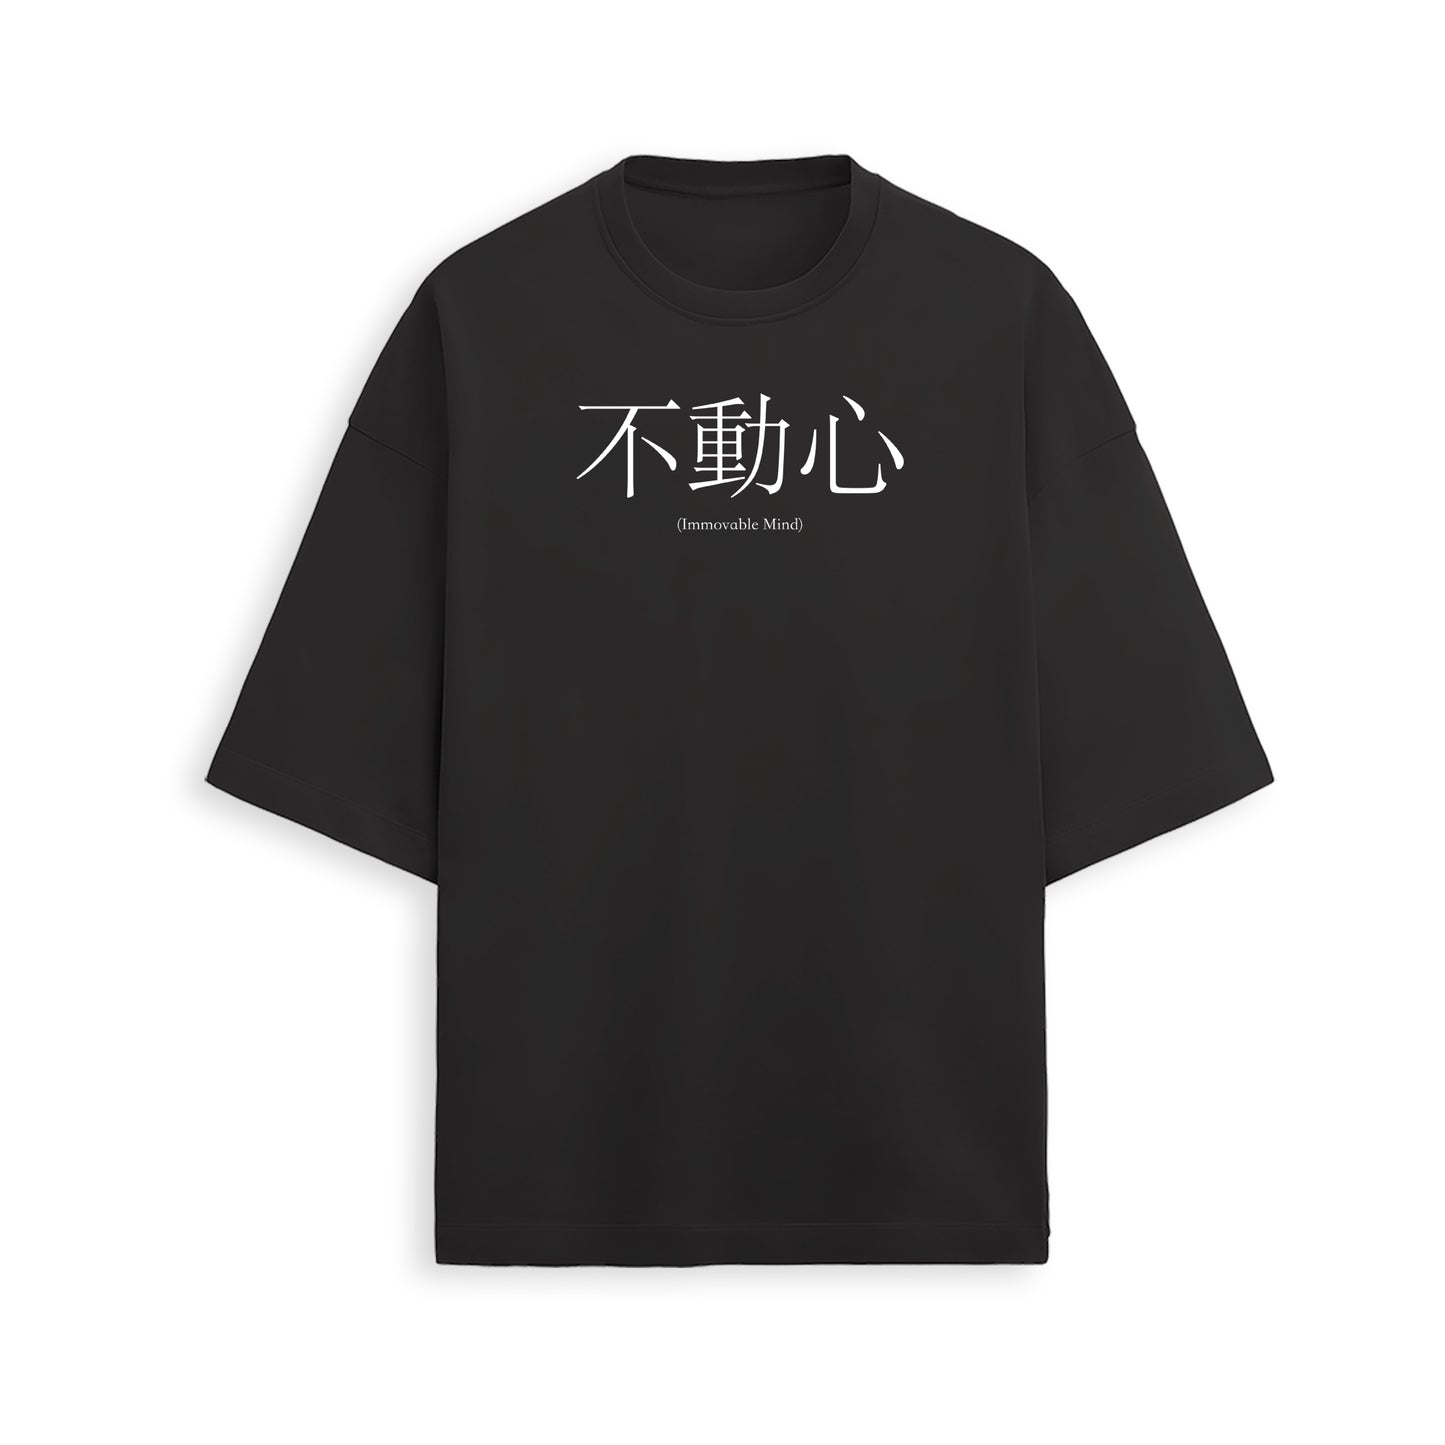 Vegeta Train In Saiyan Oversized T-shirt - Dragon Ball